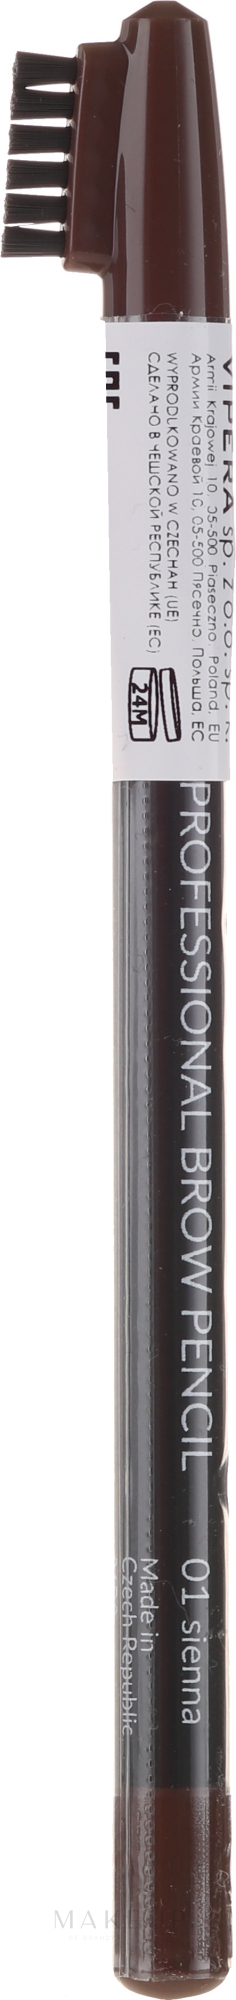 Augenbrauenstift - Vipera Professional Brow Pencil — Bild 01 - Sienna